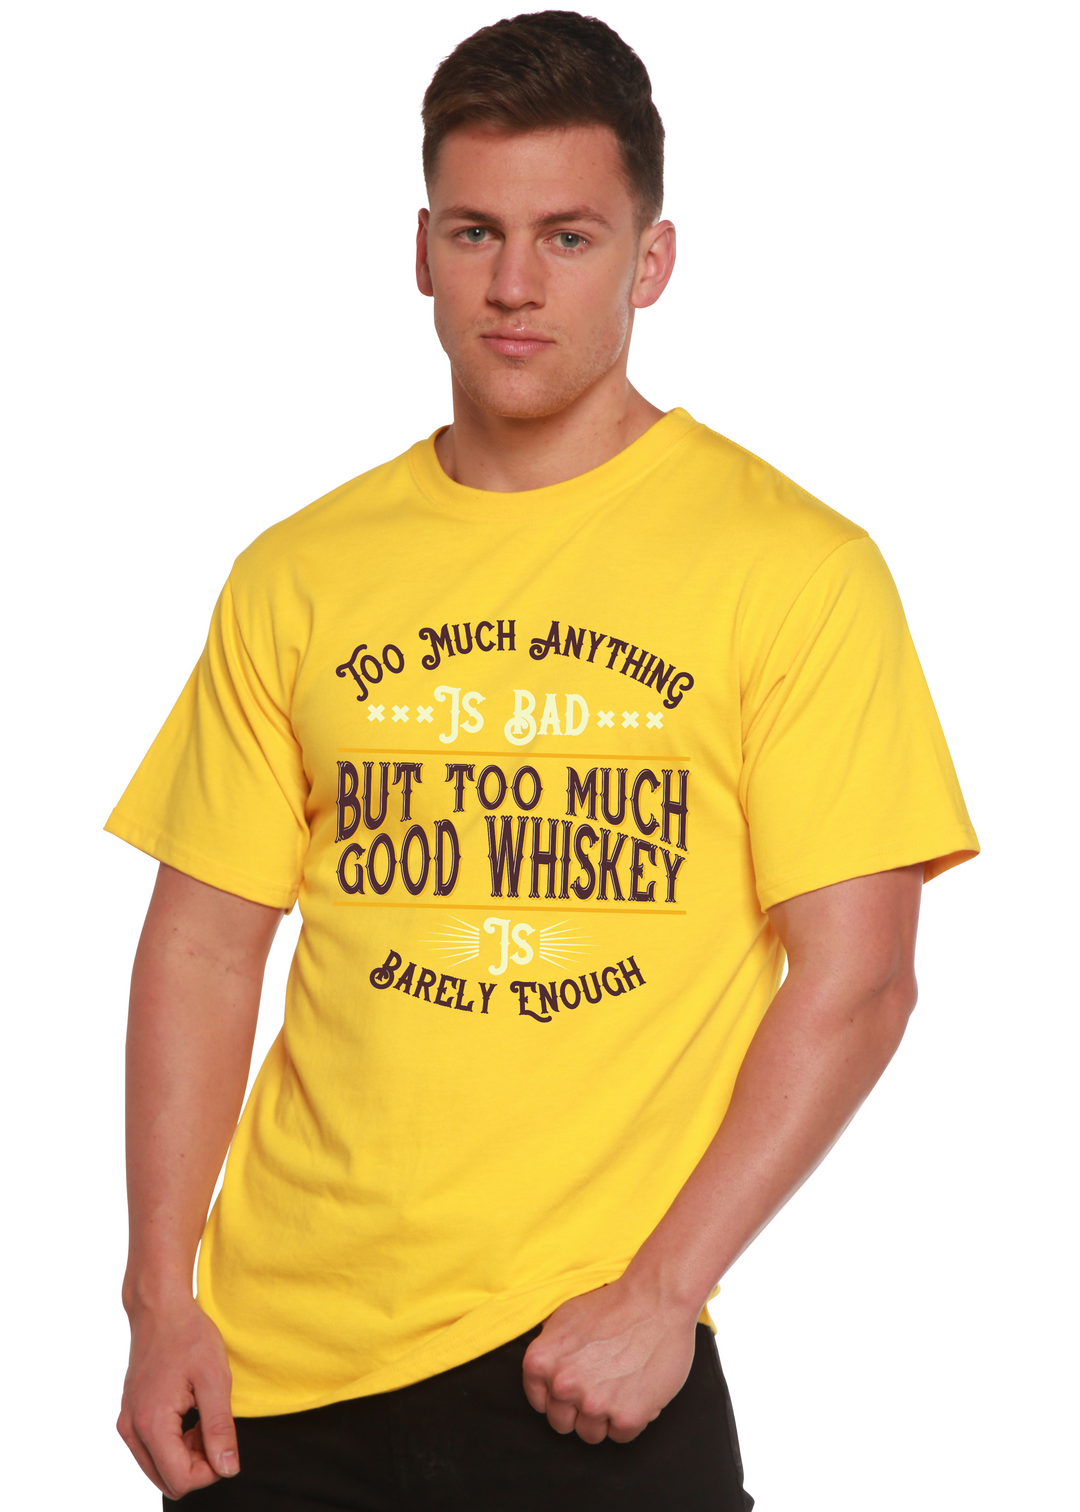 But Too Much Good Whiskey men's bamboo tshirt lemon chrome